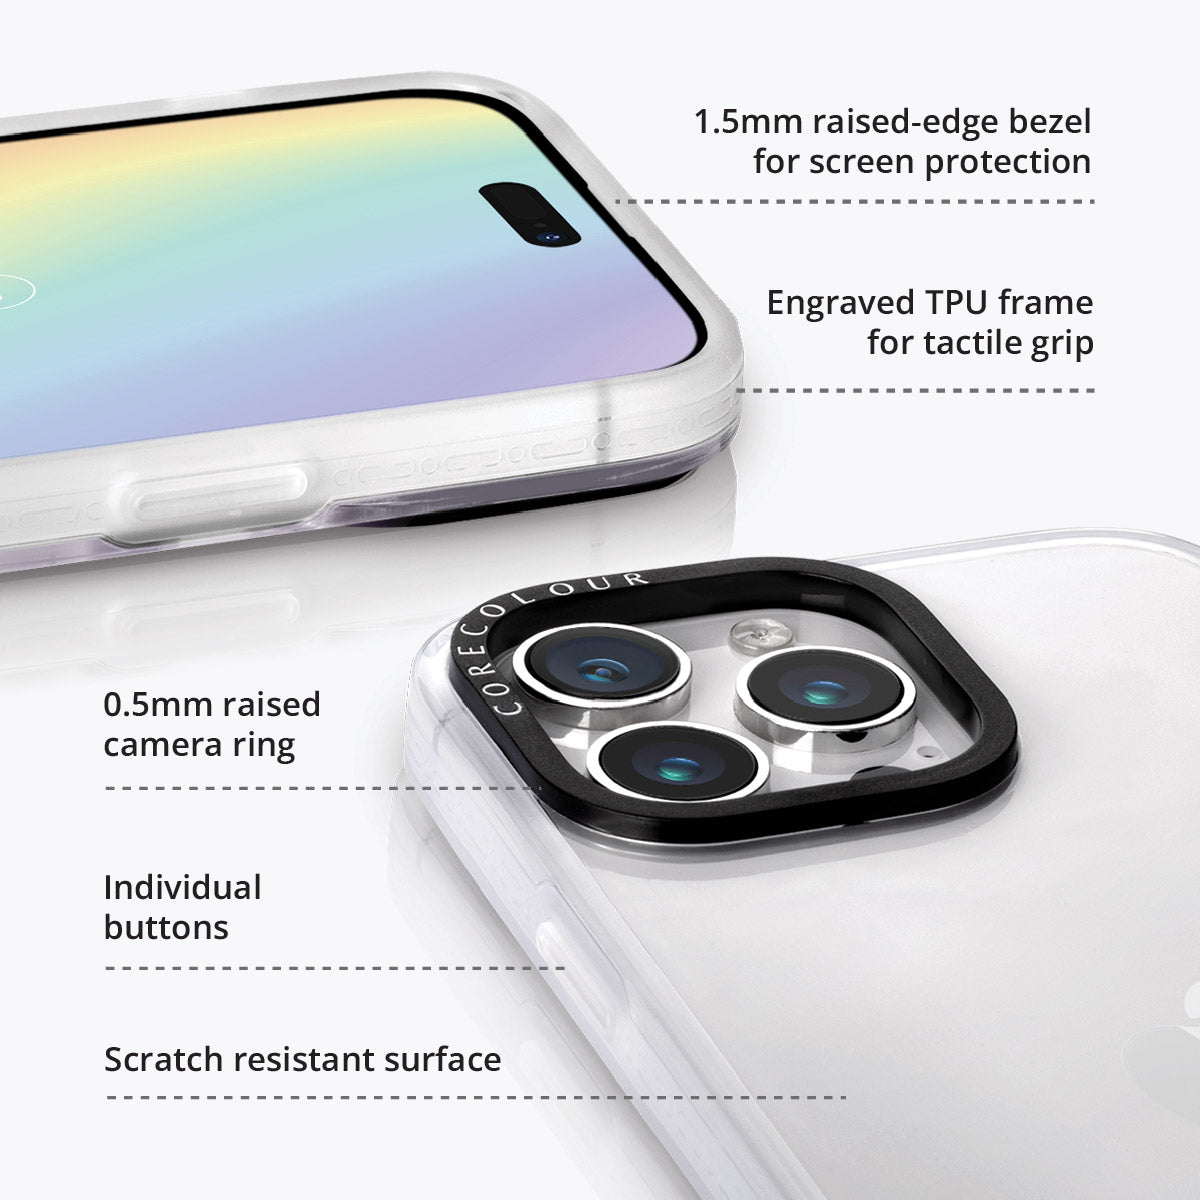 iPhone 12 Pro Lilac Picnic Phone Case Magsafe Compatible - CORECOLOUR AU